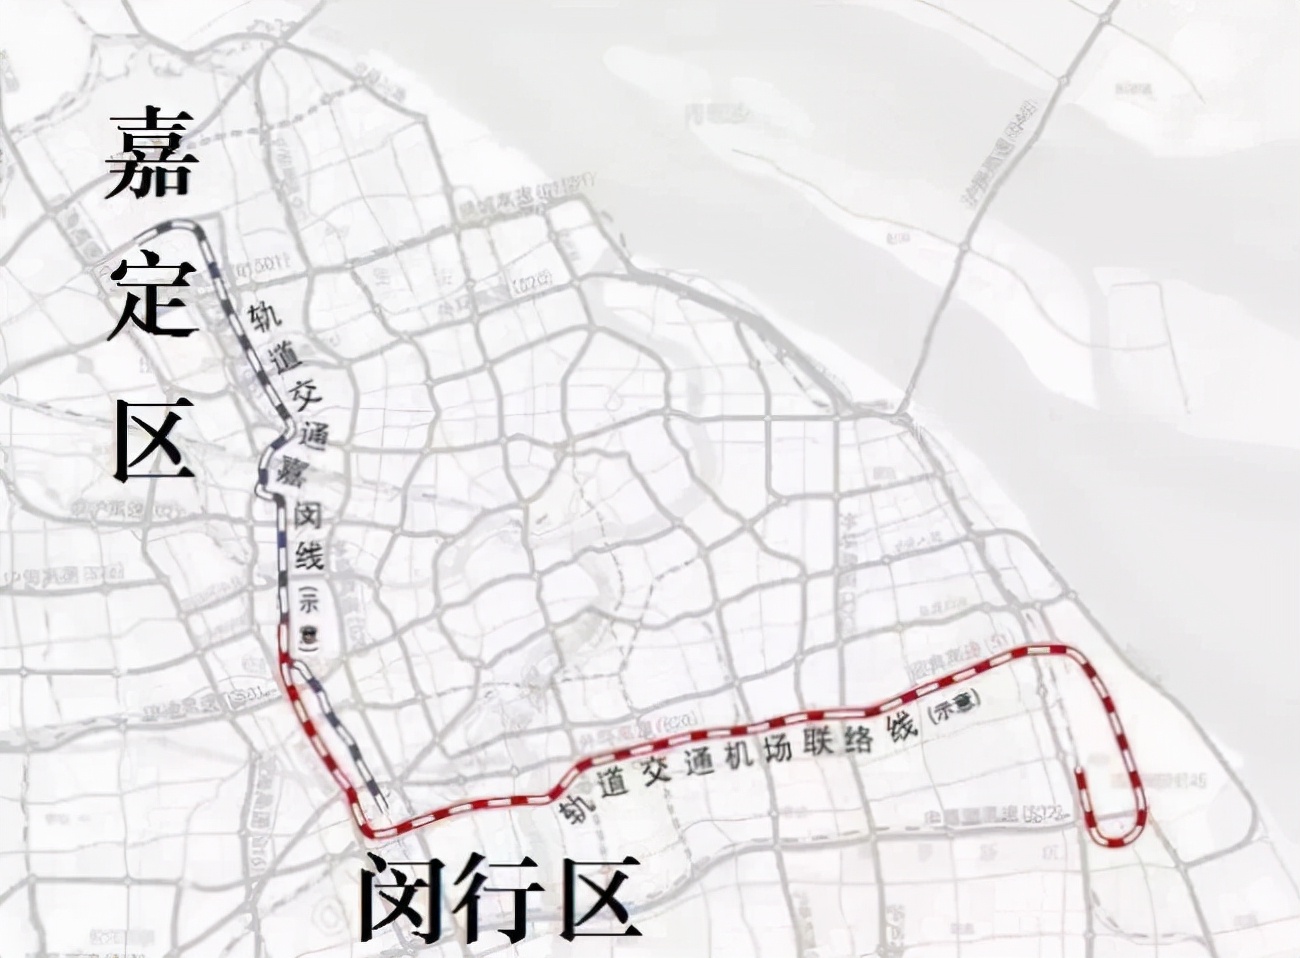 上海嘉闵线南延伸图片